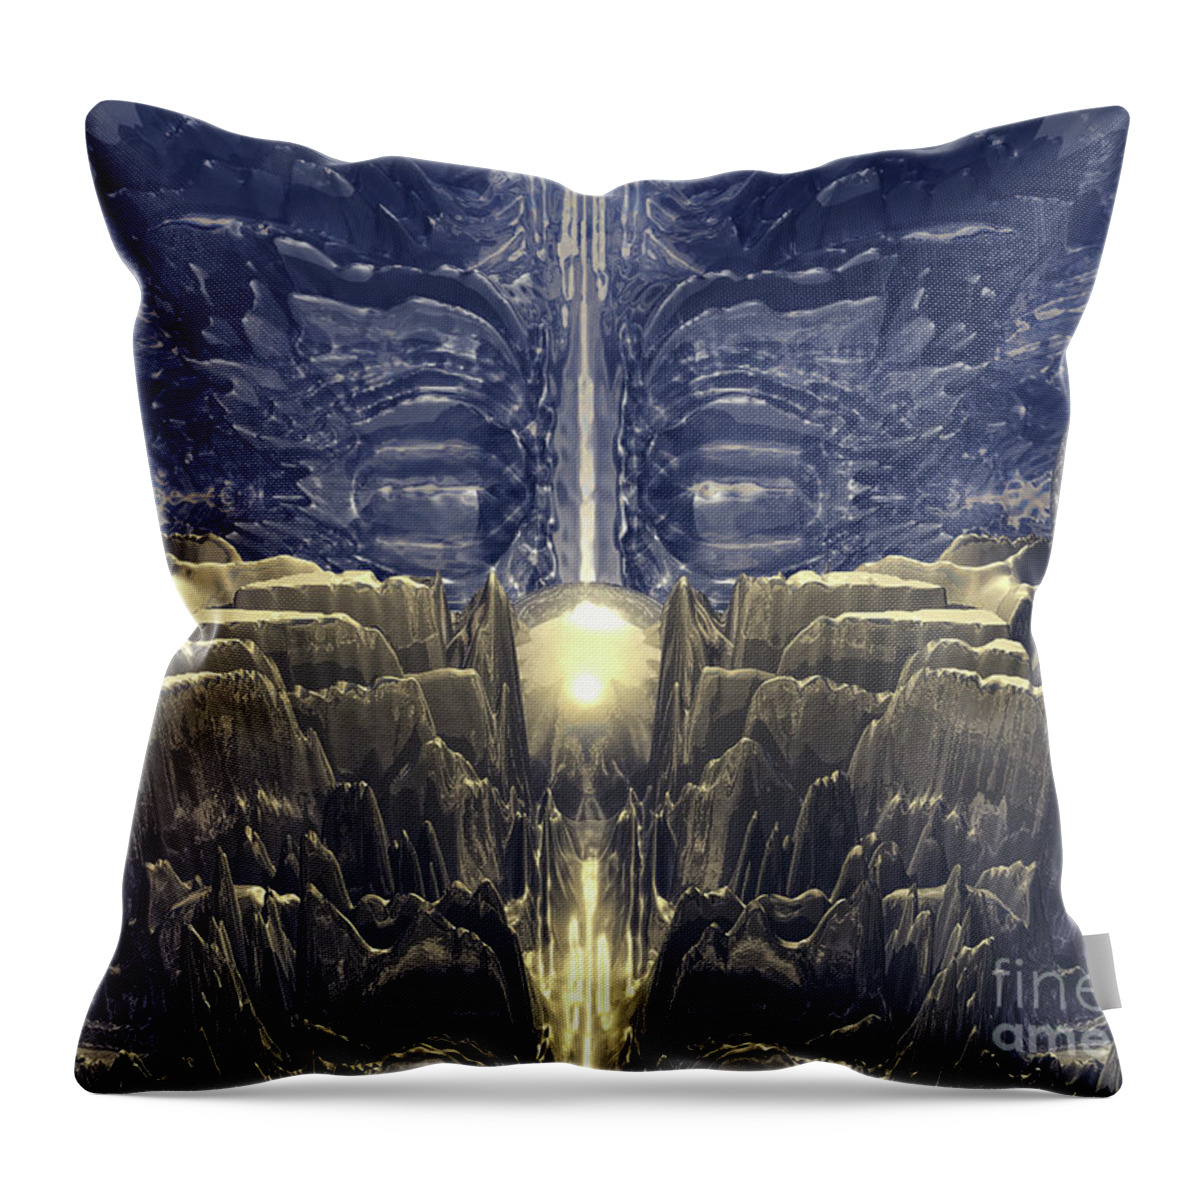 Digital Art Throw Pillow featuring the digital art Golden Fractal Environment by Phil Perkins